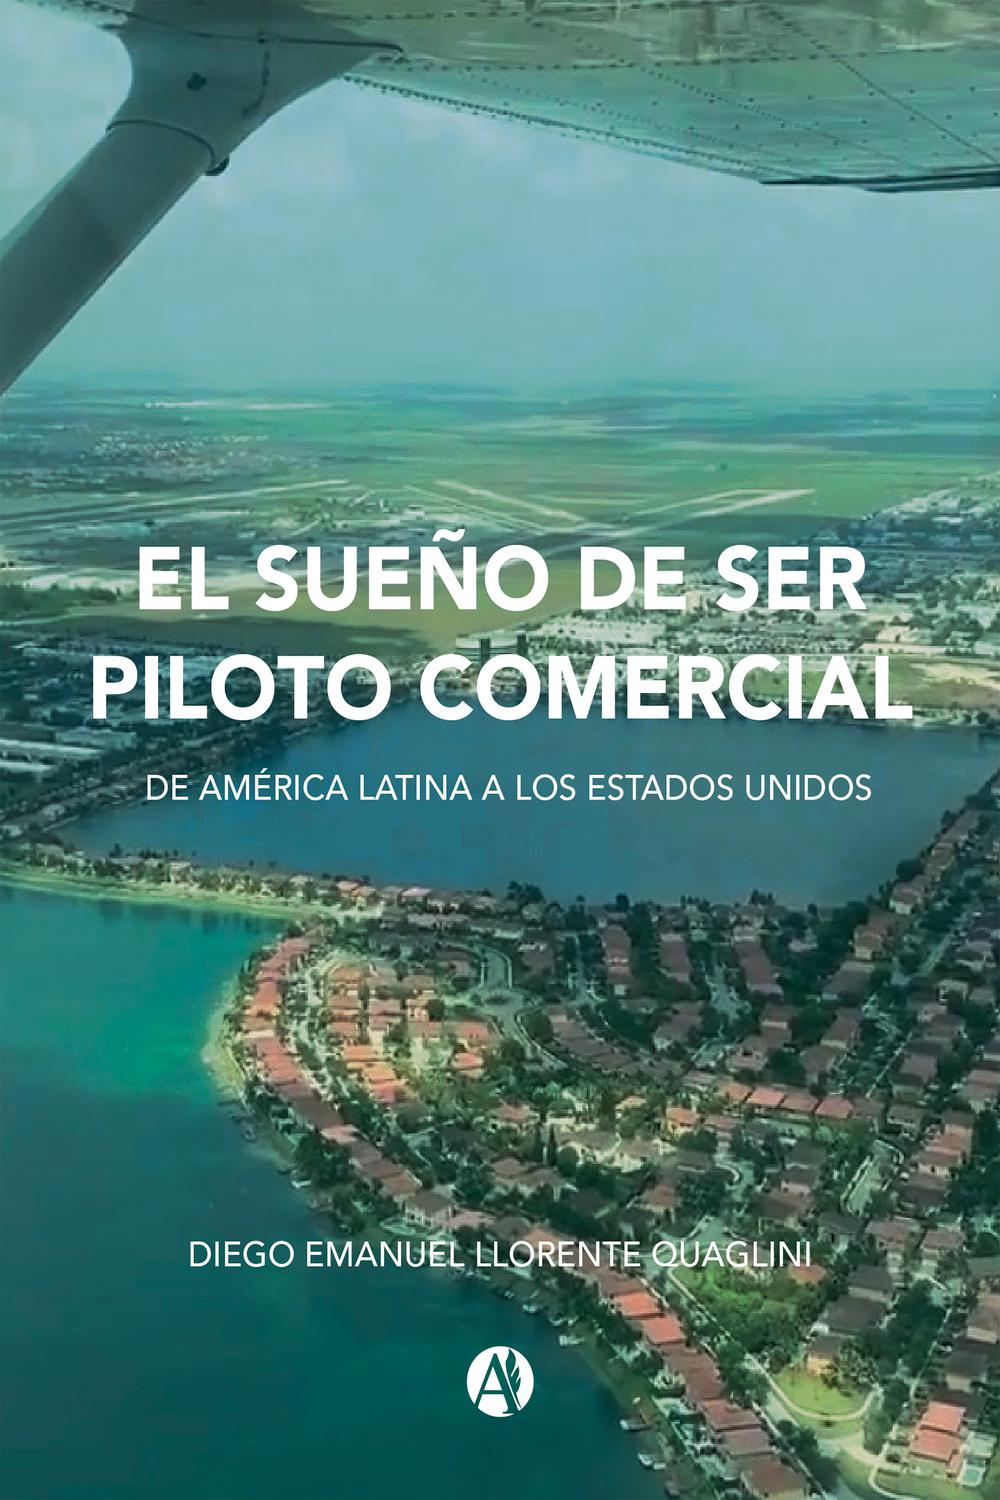 El sueño de ser piloto comercial - Diego Llorente